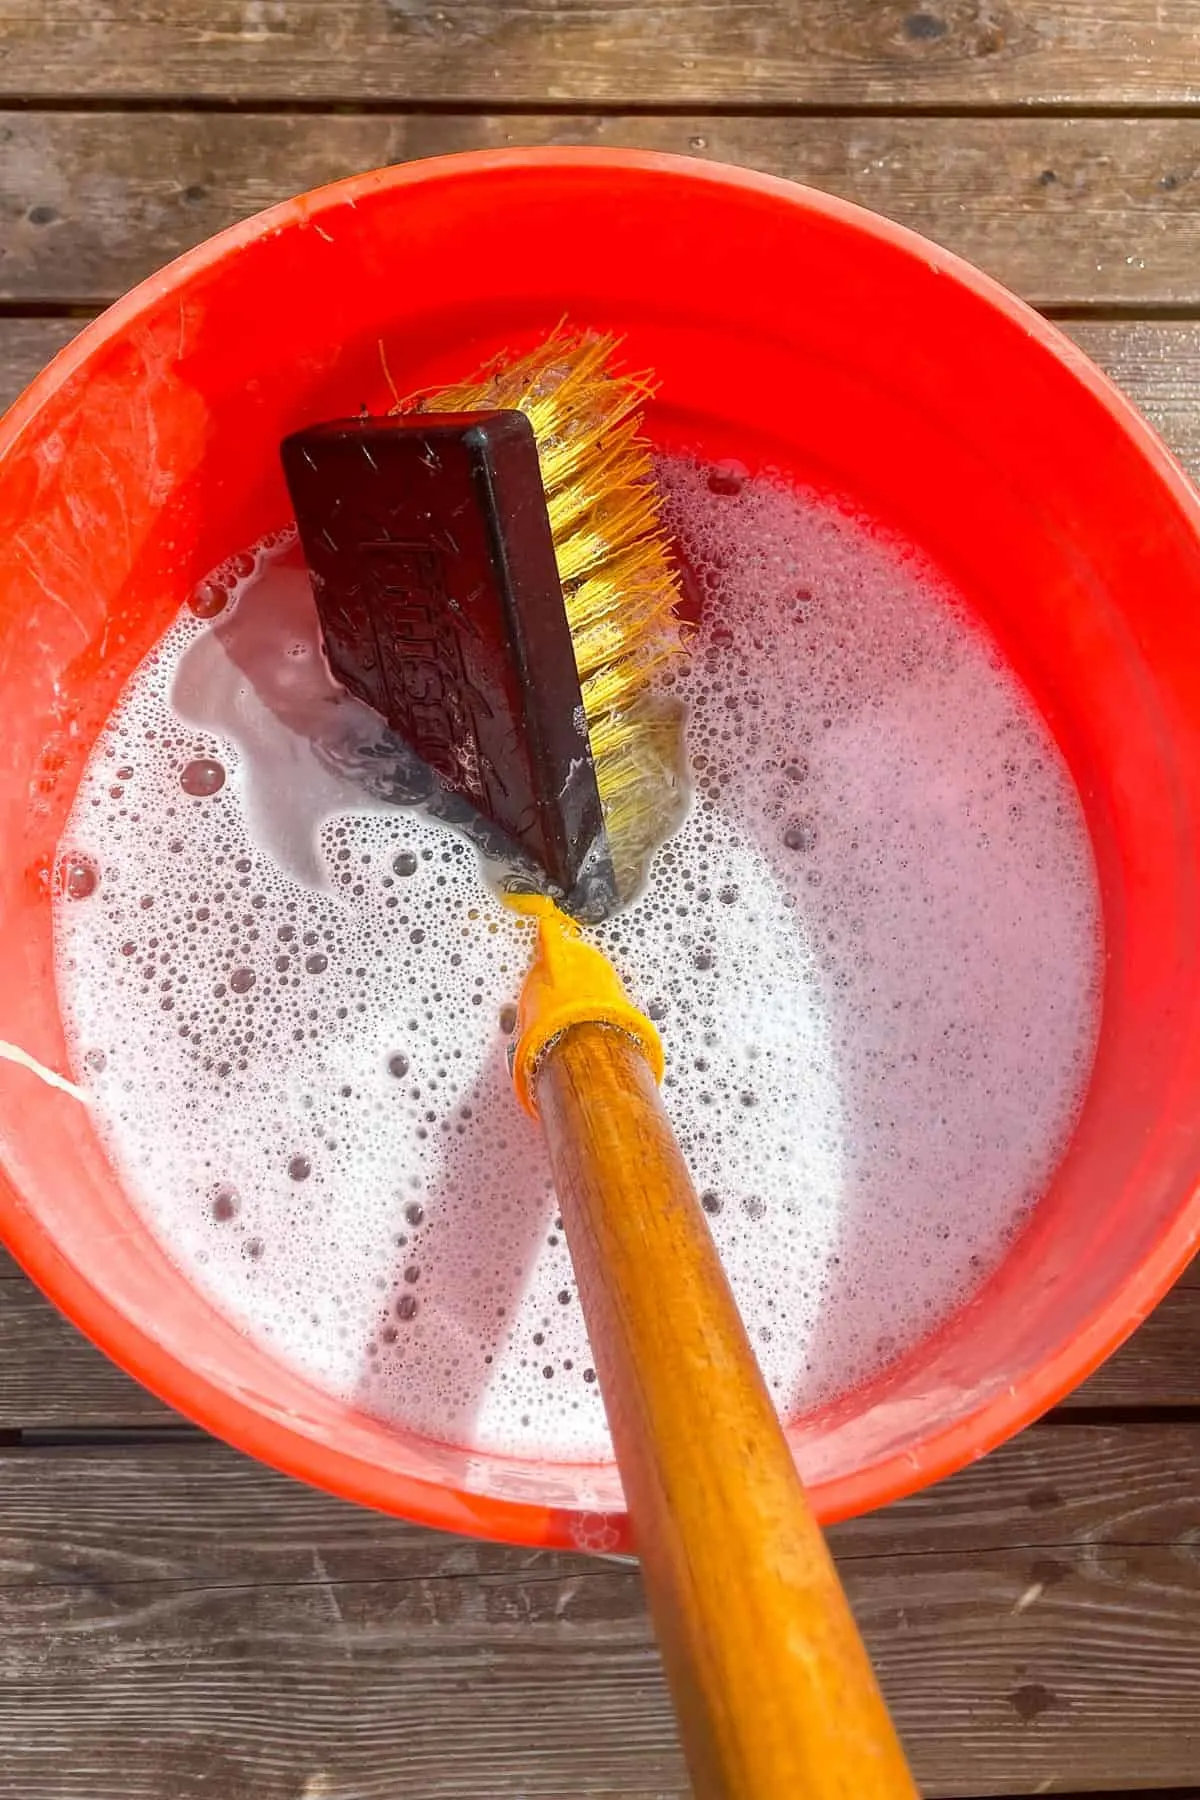 scrub brush in deck cleaner bucket